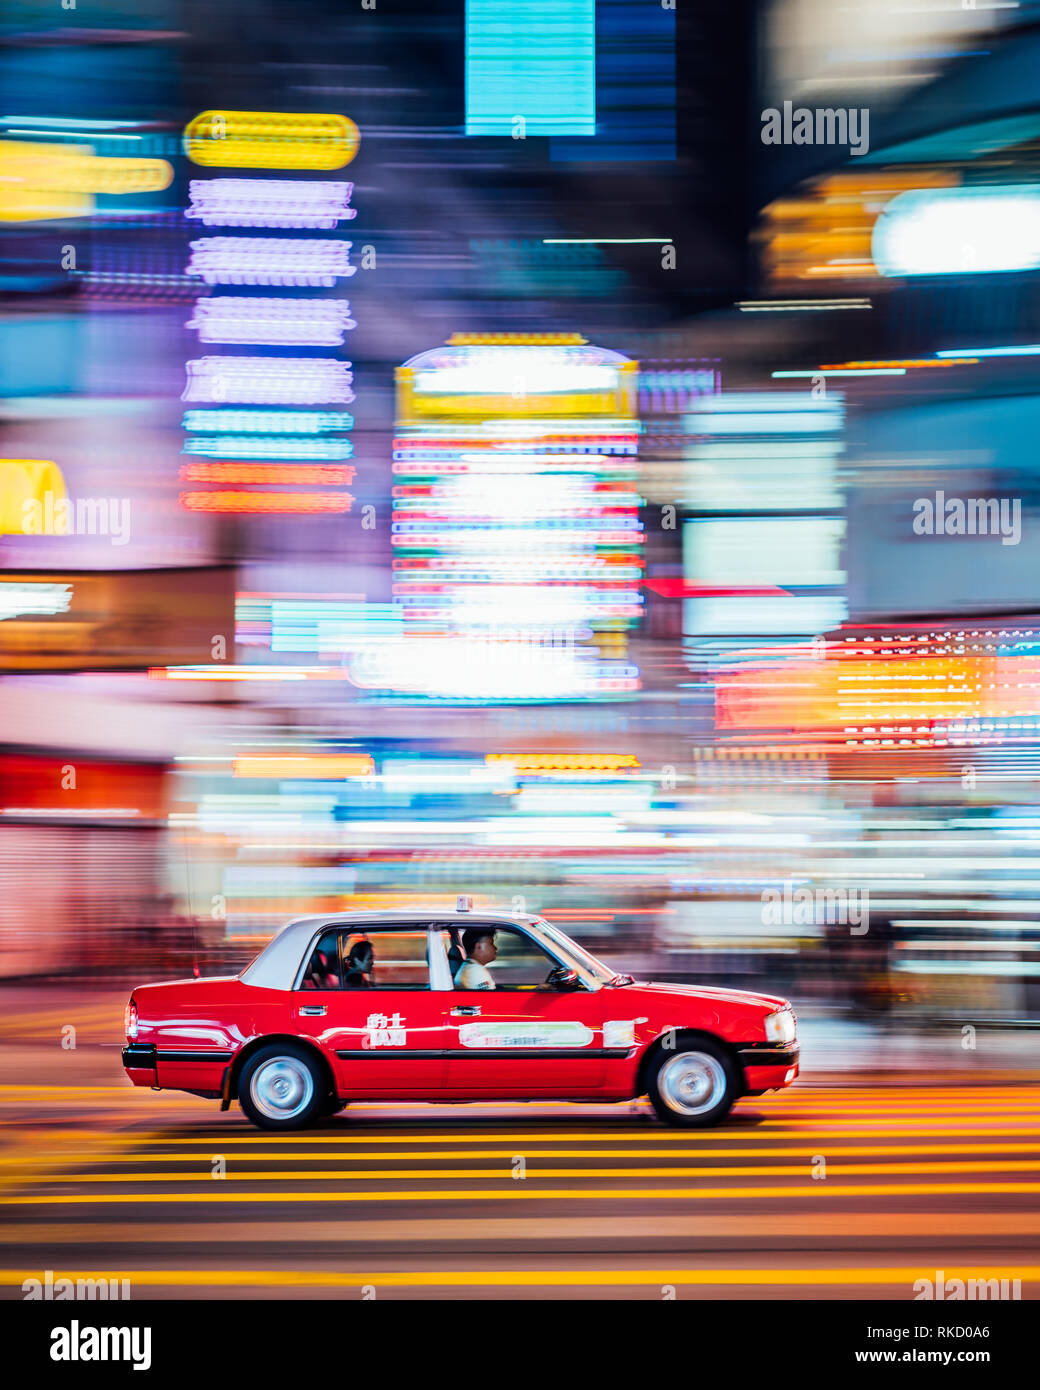 Neonröhren sind lebendig in Hongkong, ein rotes Taxi Geschwindigkeit durch eine Kreuzung in Kowloon, Hong Kong. Taxis sind eine kostengünstige Möglichkeit, zu pendeln. Stockfoto